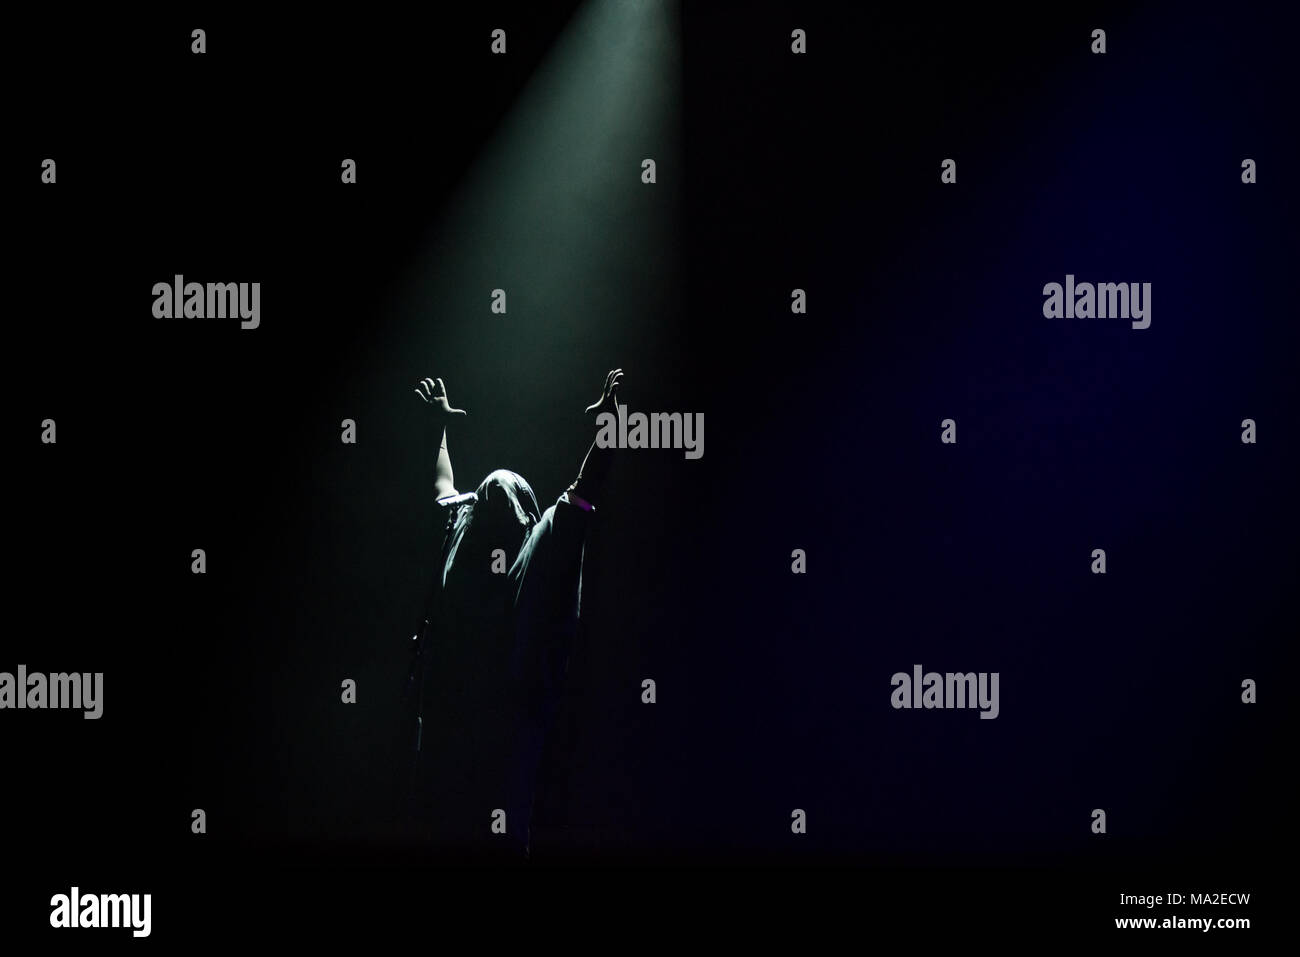 L'Italia, 2016 luglio 16: Anohni performing live open stage presso il Festival dei Fiori per il suo tour 2016 unico concerto Italiano Foto: Alessandro Bosio Foto Stock